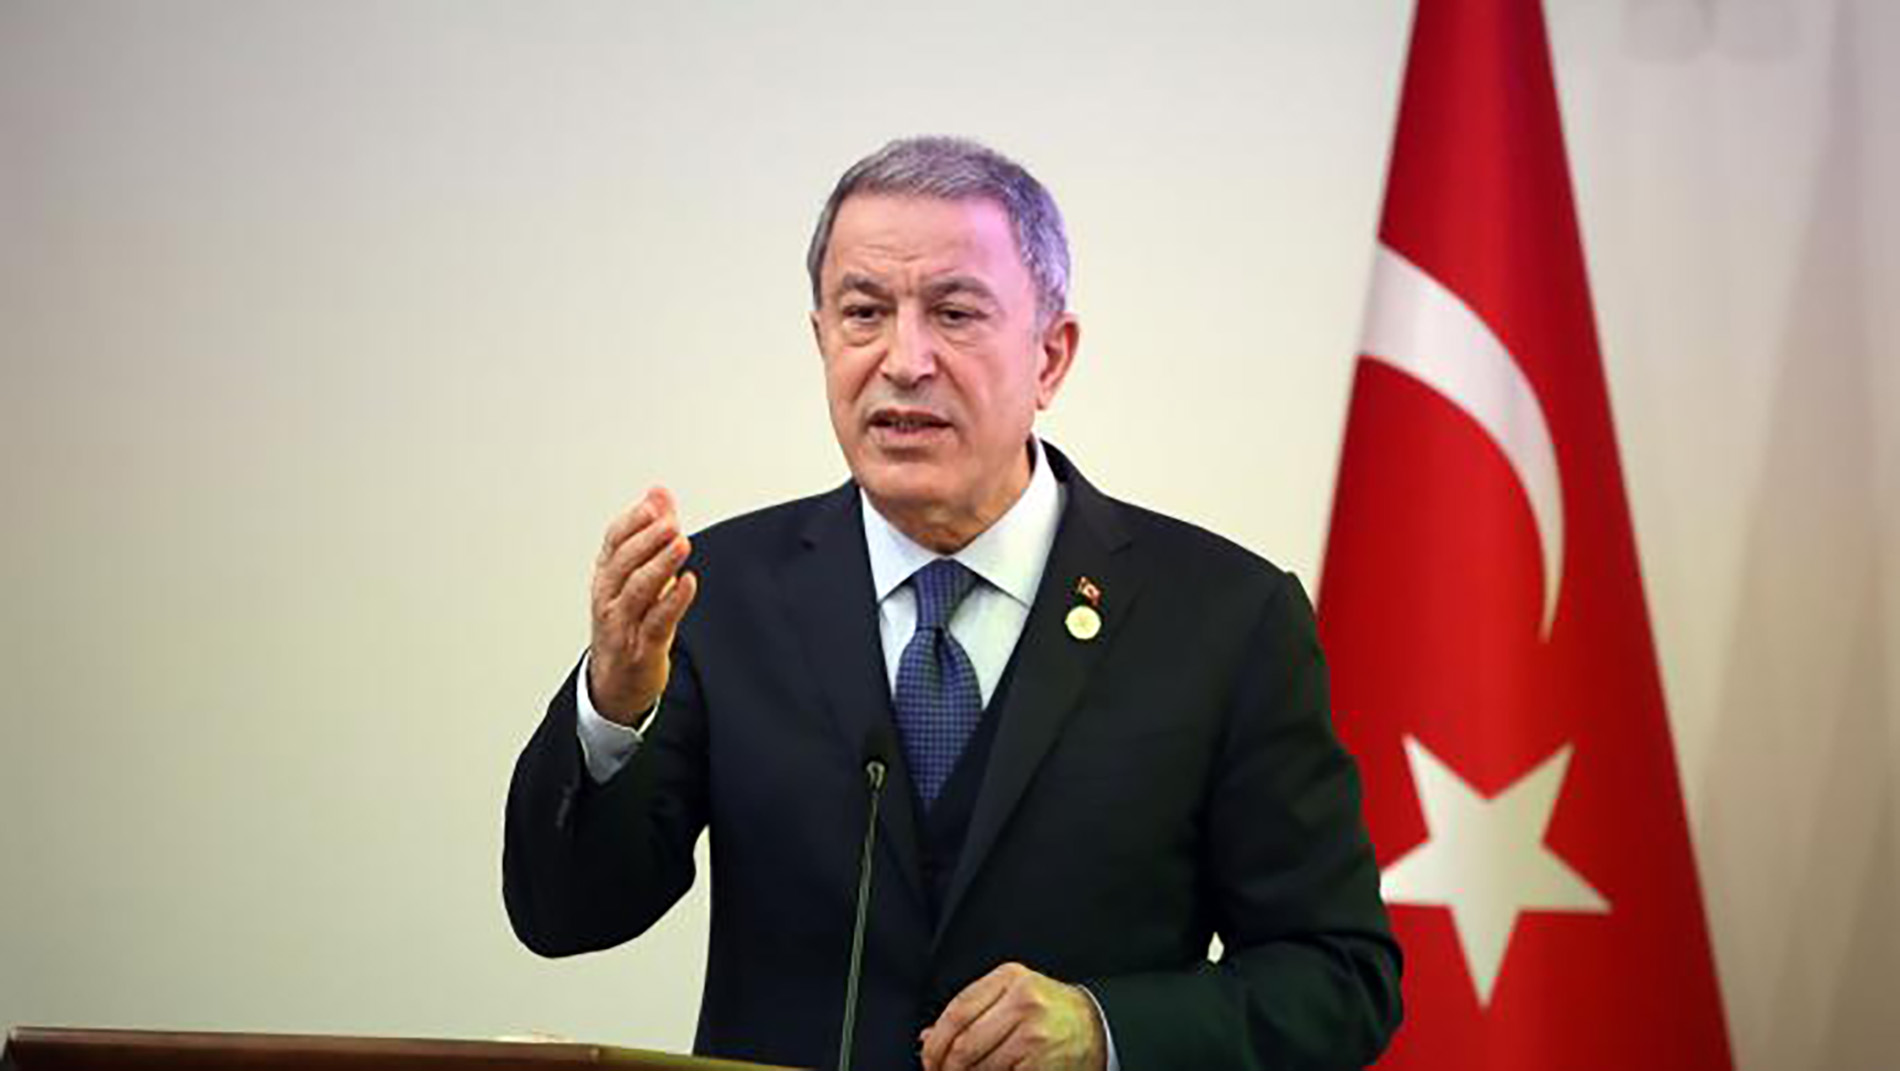 وزير الدفاع التركي يتهم اليونان بالجري وراء سباق تسلح استعراضي